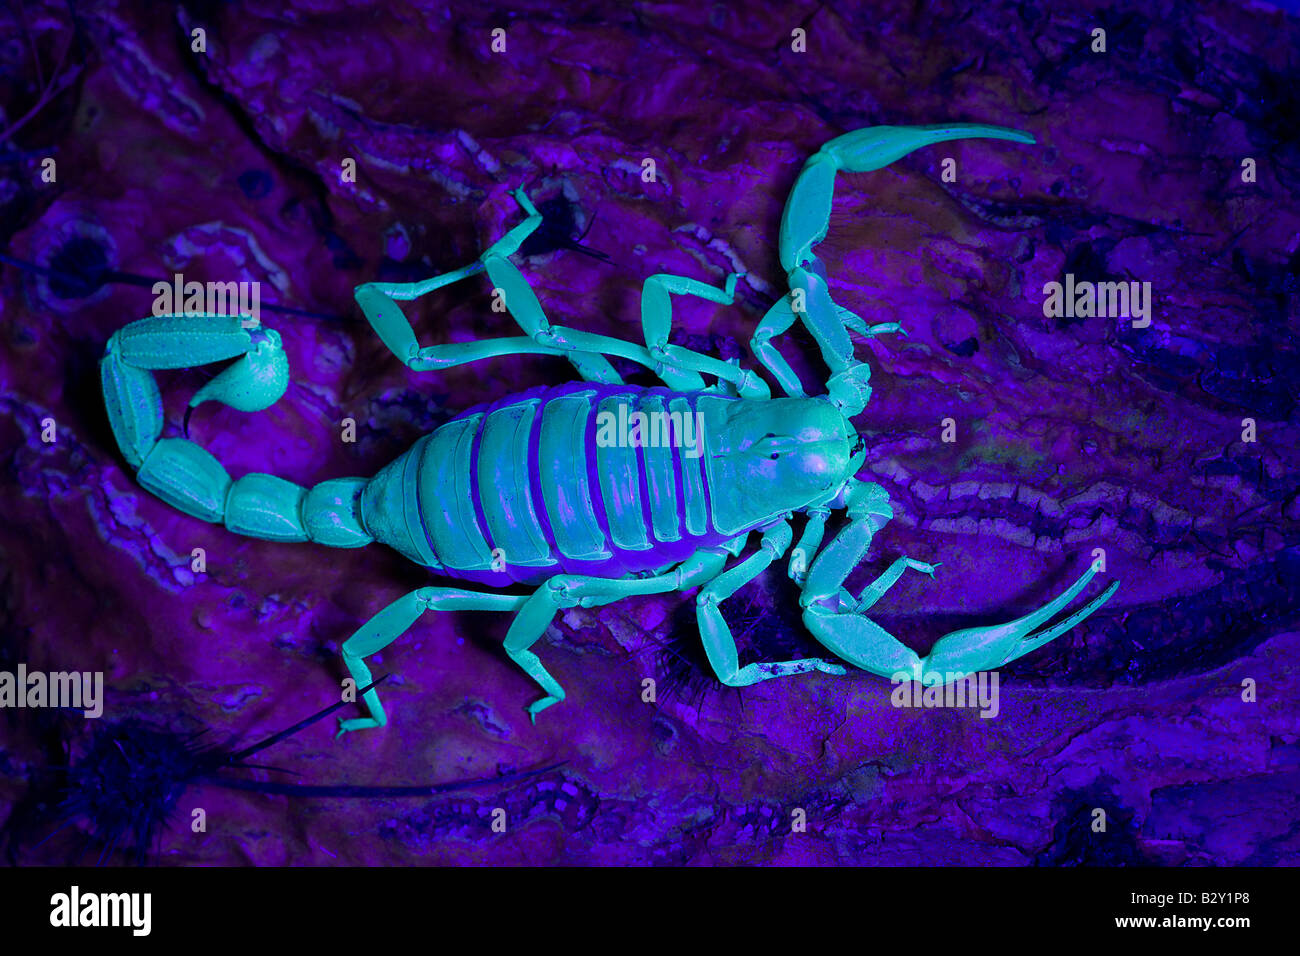 Desert Hairy Scorpion (Hadrurus arizonensis) Also called Giant Hairy Scorpion - Under UV light Arizona USA Stock Photo